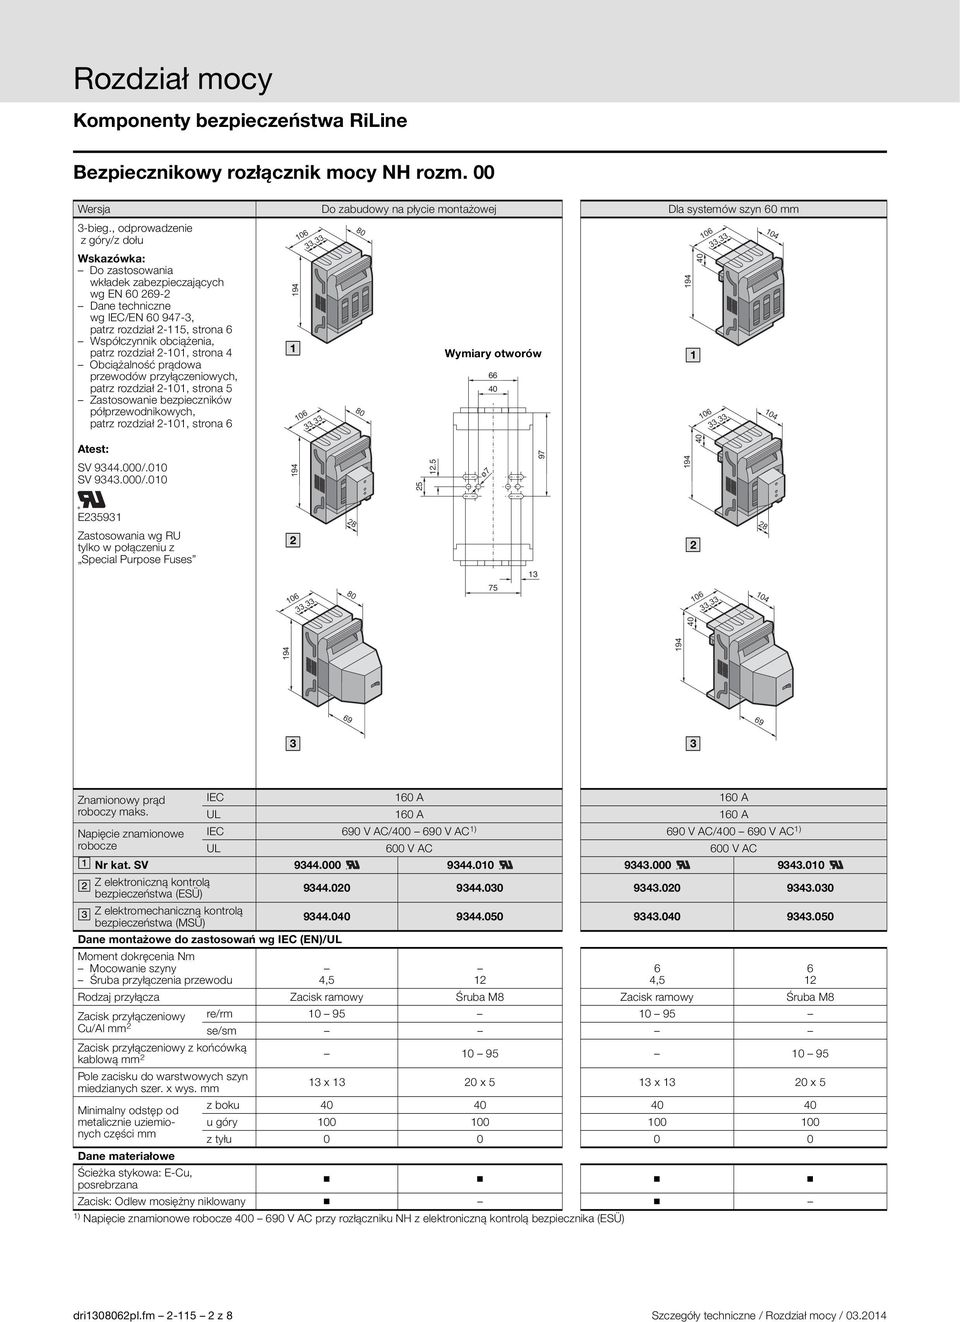 Obciążalność prądowa przewodów przyłączeniowych, patrz rozdział -0, strona 5 Zastosowanie bezpieczników półprzewodnikowych, patrz rozdział -0, strona 6 94 06 06 66 40 94 40 06 06 04 04 test: SV 944.